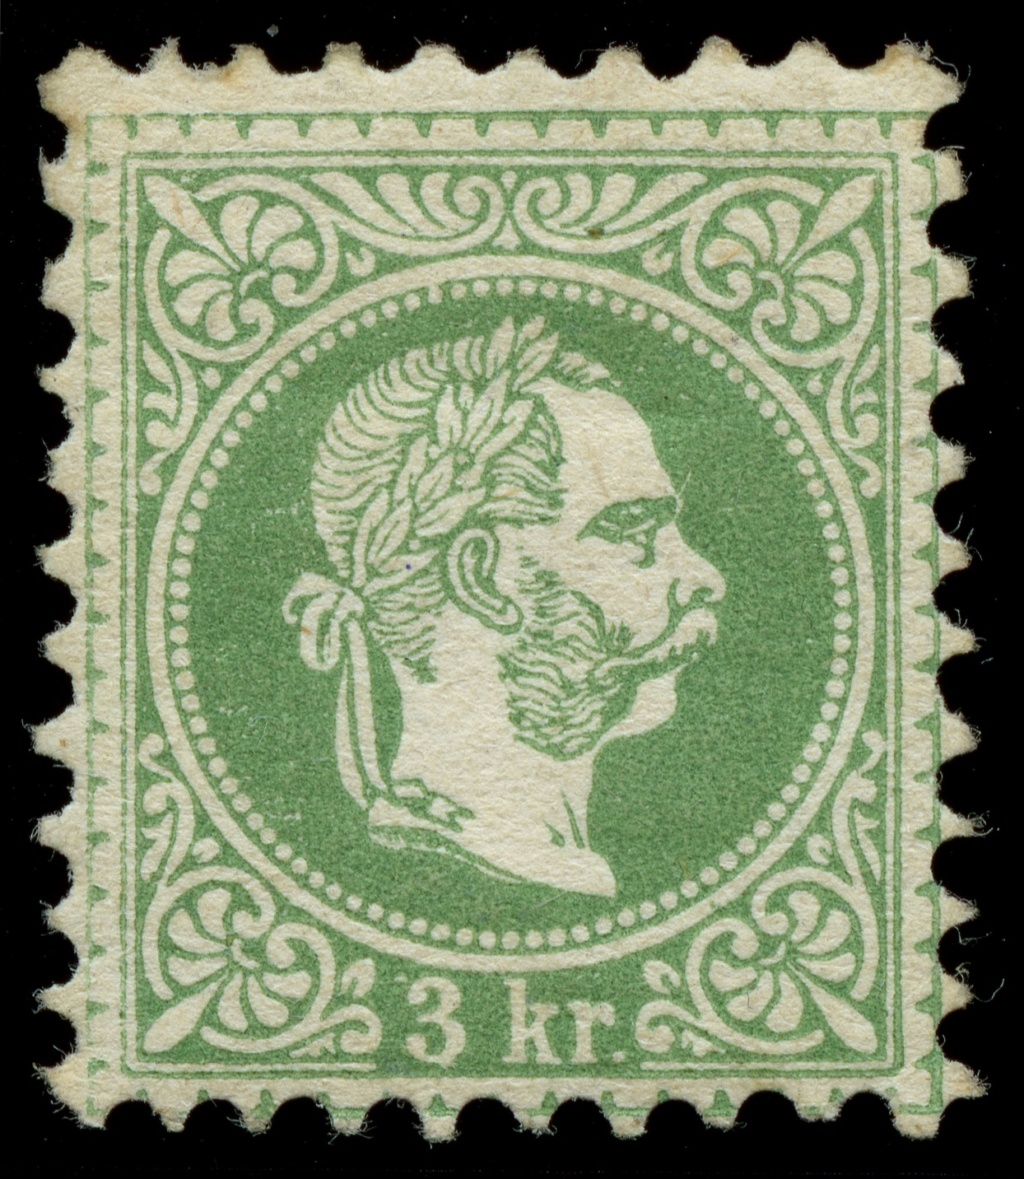 Osterreich - Freimarken-Ausgabe 1867 : Kopfbildnis Kaiser Franz Joseph I - Seite 23 Ank_3618